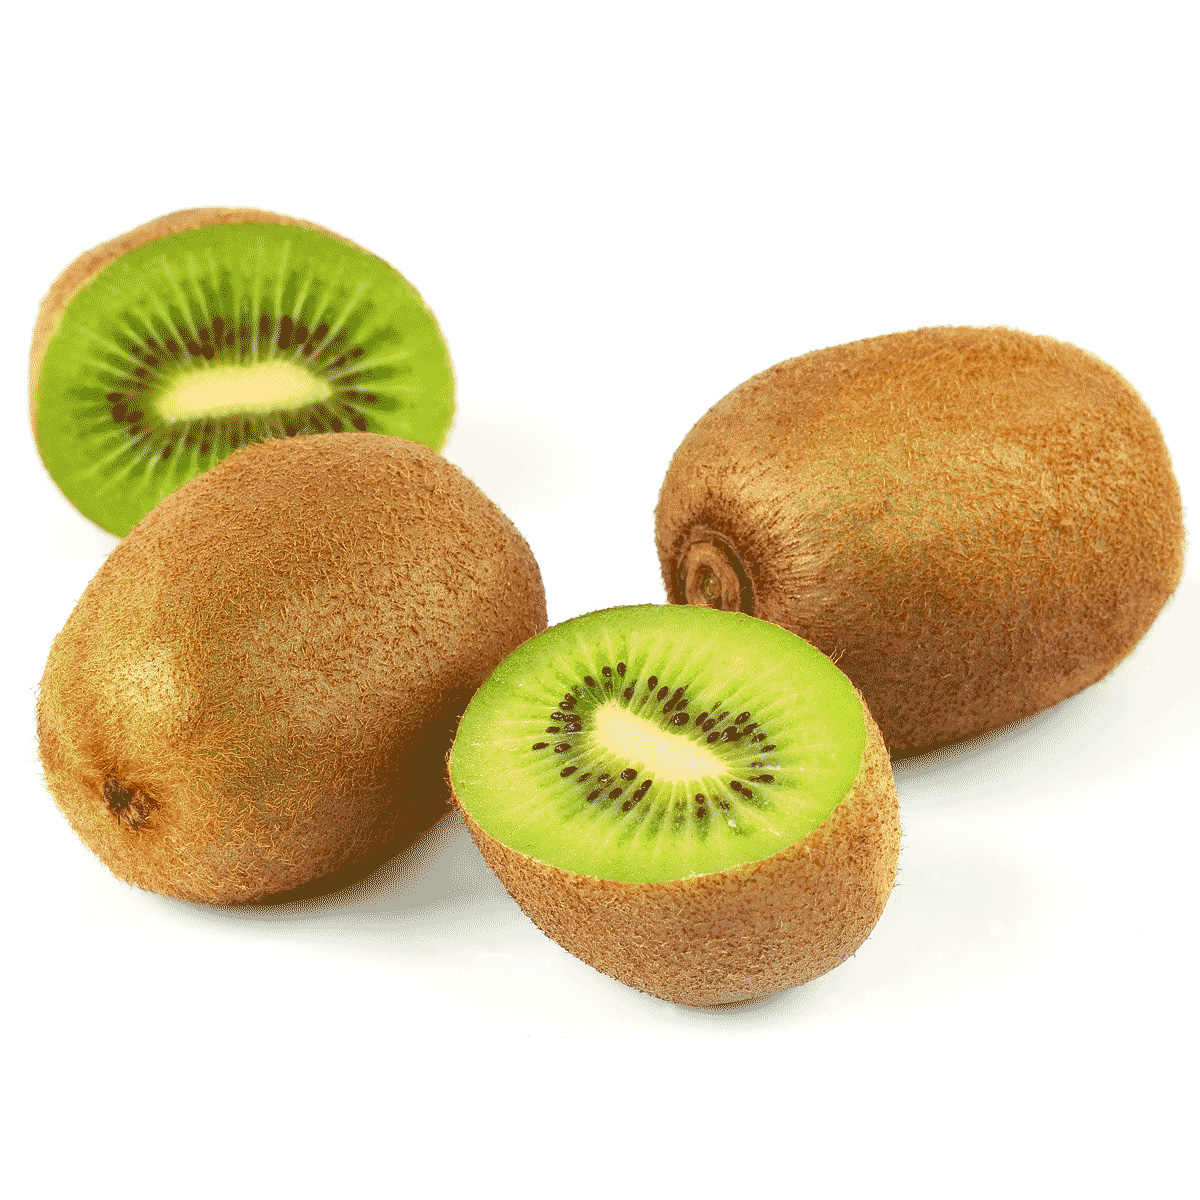 Kiwi - Fruiterie Potager.